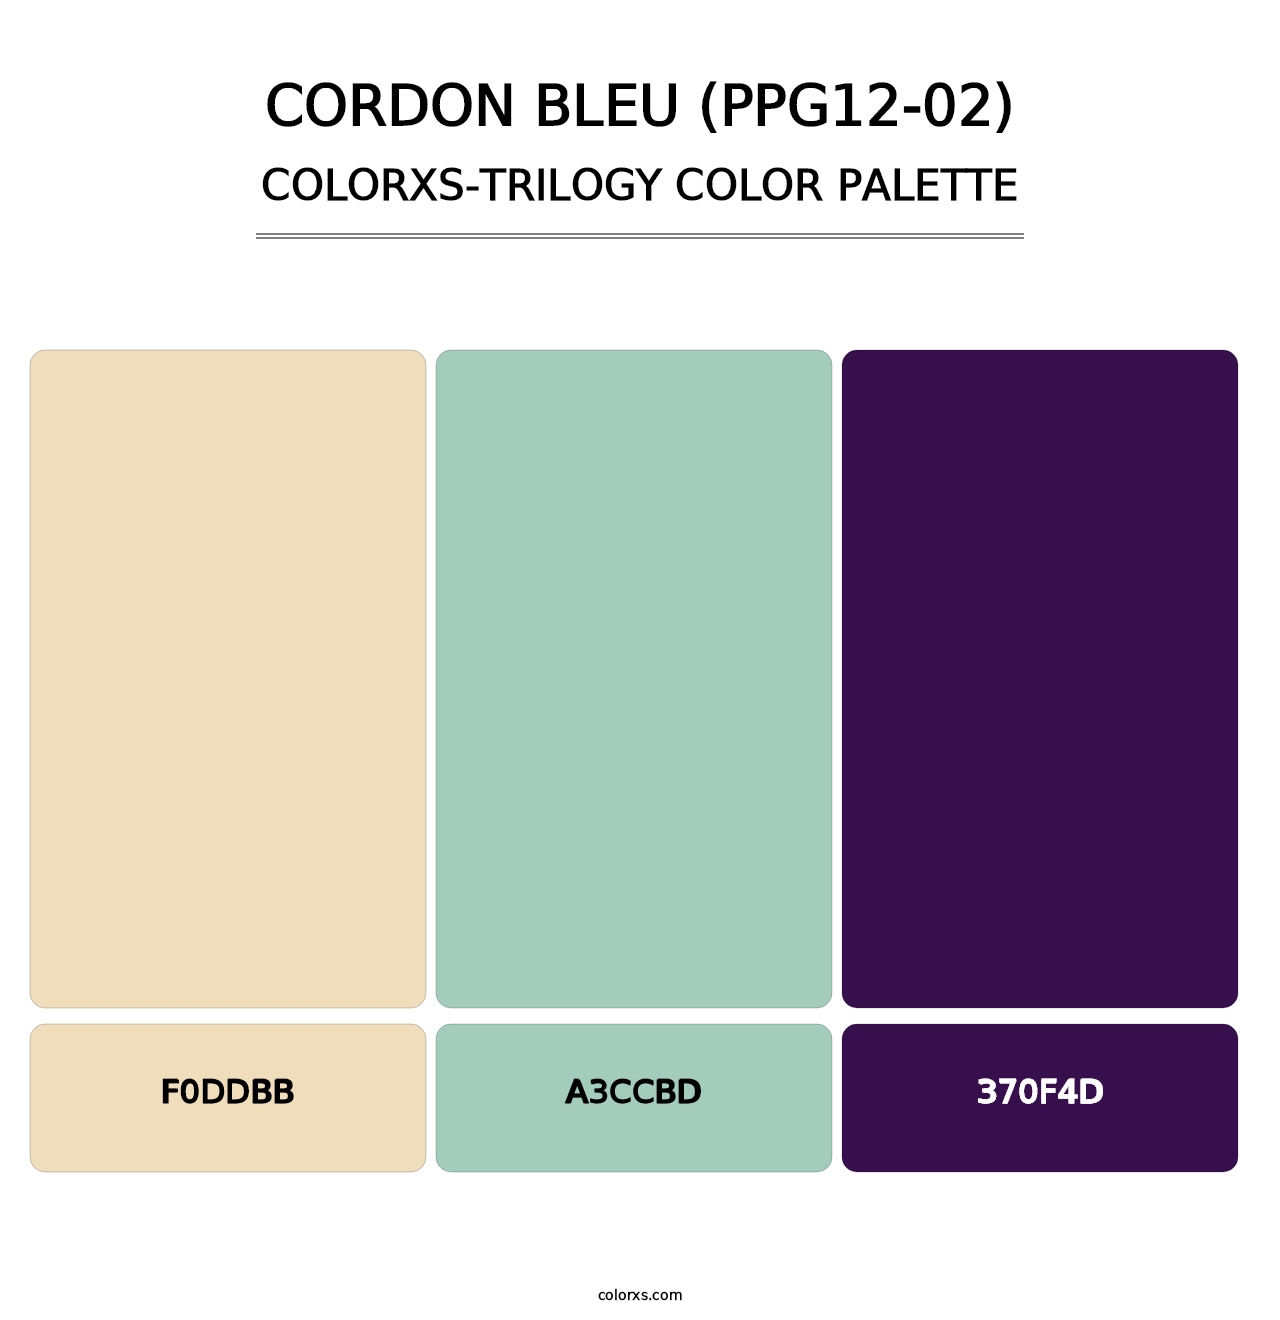 Cordon Bleu (PPG12-02) - Colorxs Trilogy Palette